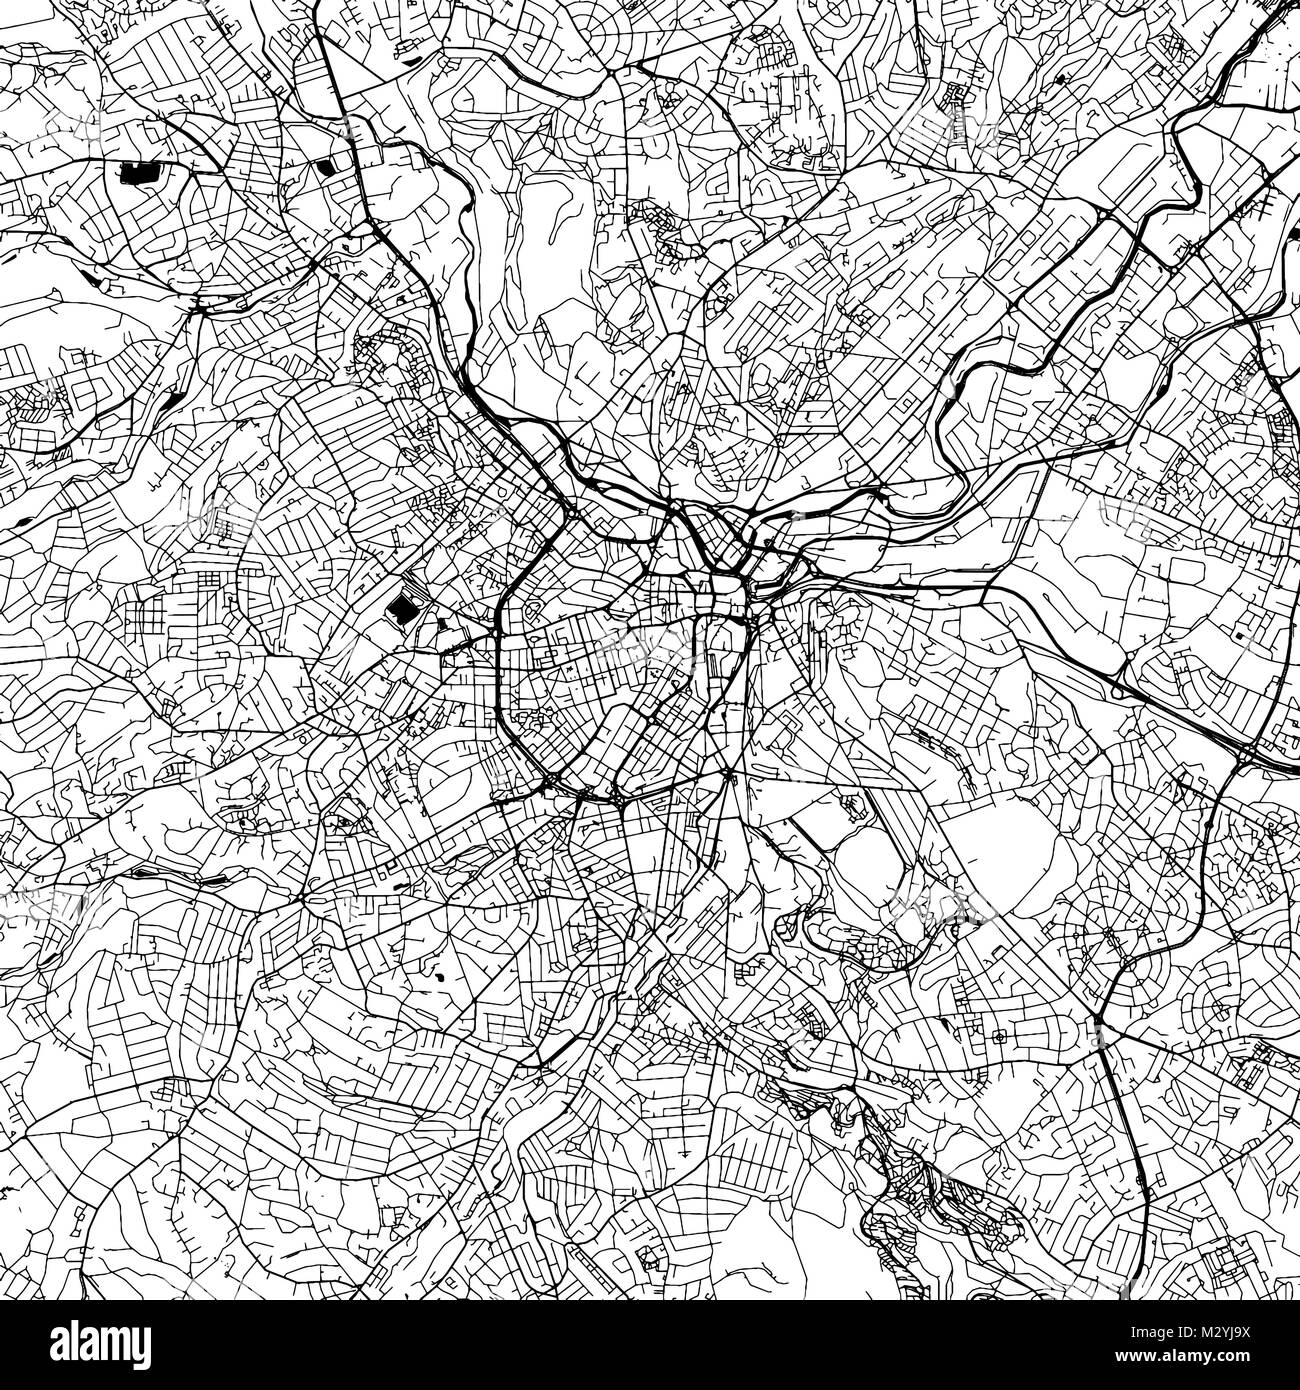 Le centre-ville de Sheffield Carte vectorielle, Version monochrome oevre Contour pour l'infographie, l'arrière-plan des rues et voies d'eau noire Illustration de Vecteur